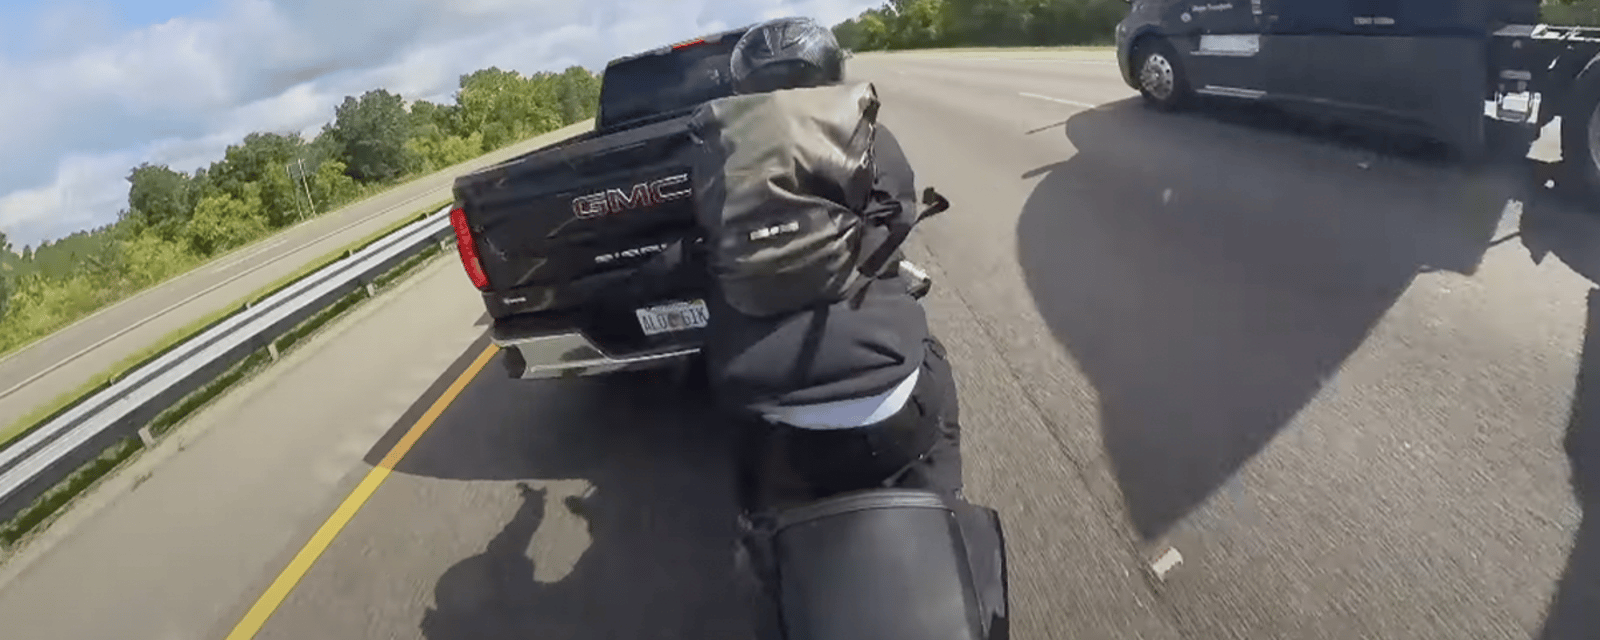 Un motocycliste filant à vivre allure sur l'autoroute frôle la mort après avoir percuté un pickup